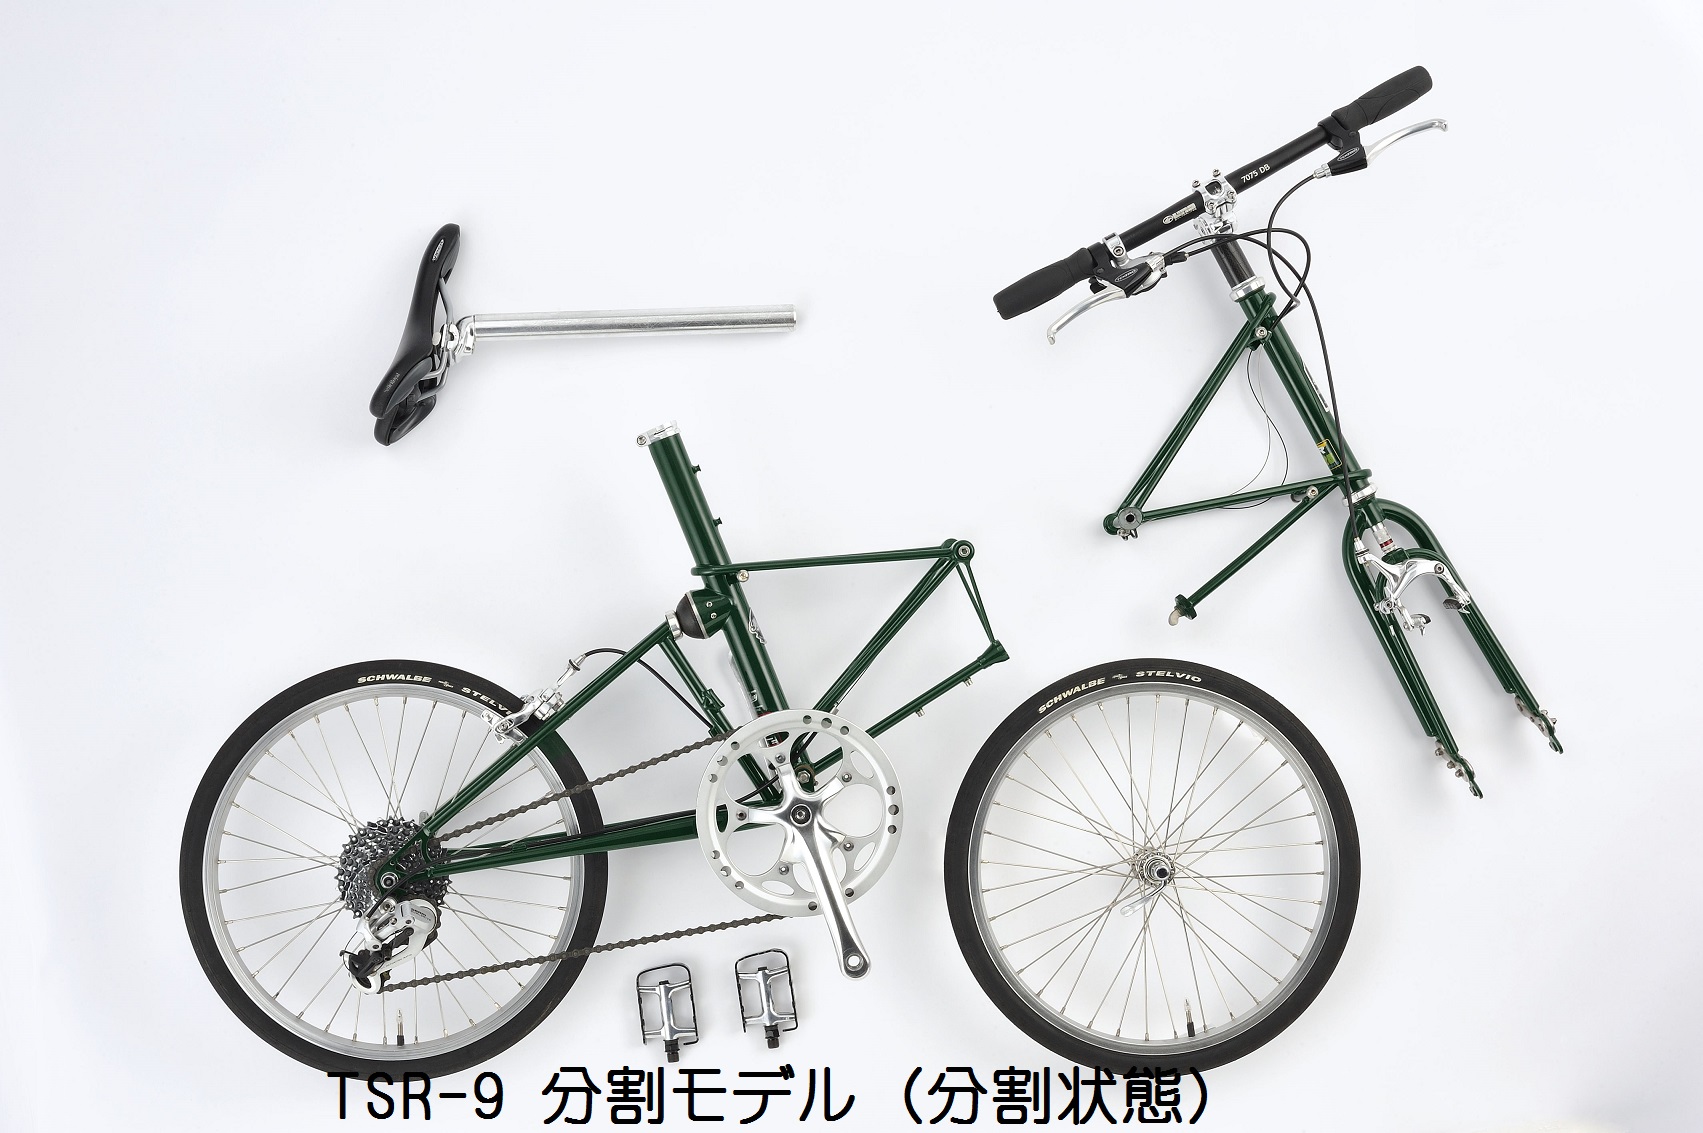 10/31終了【新品】アレックスモールトン TSR-9 sp 分割 イエロー - 自転車